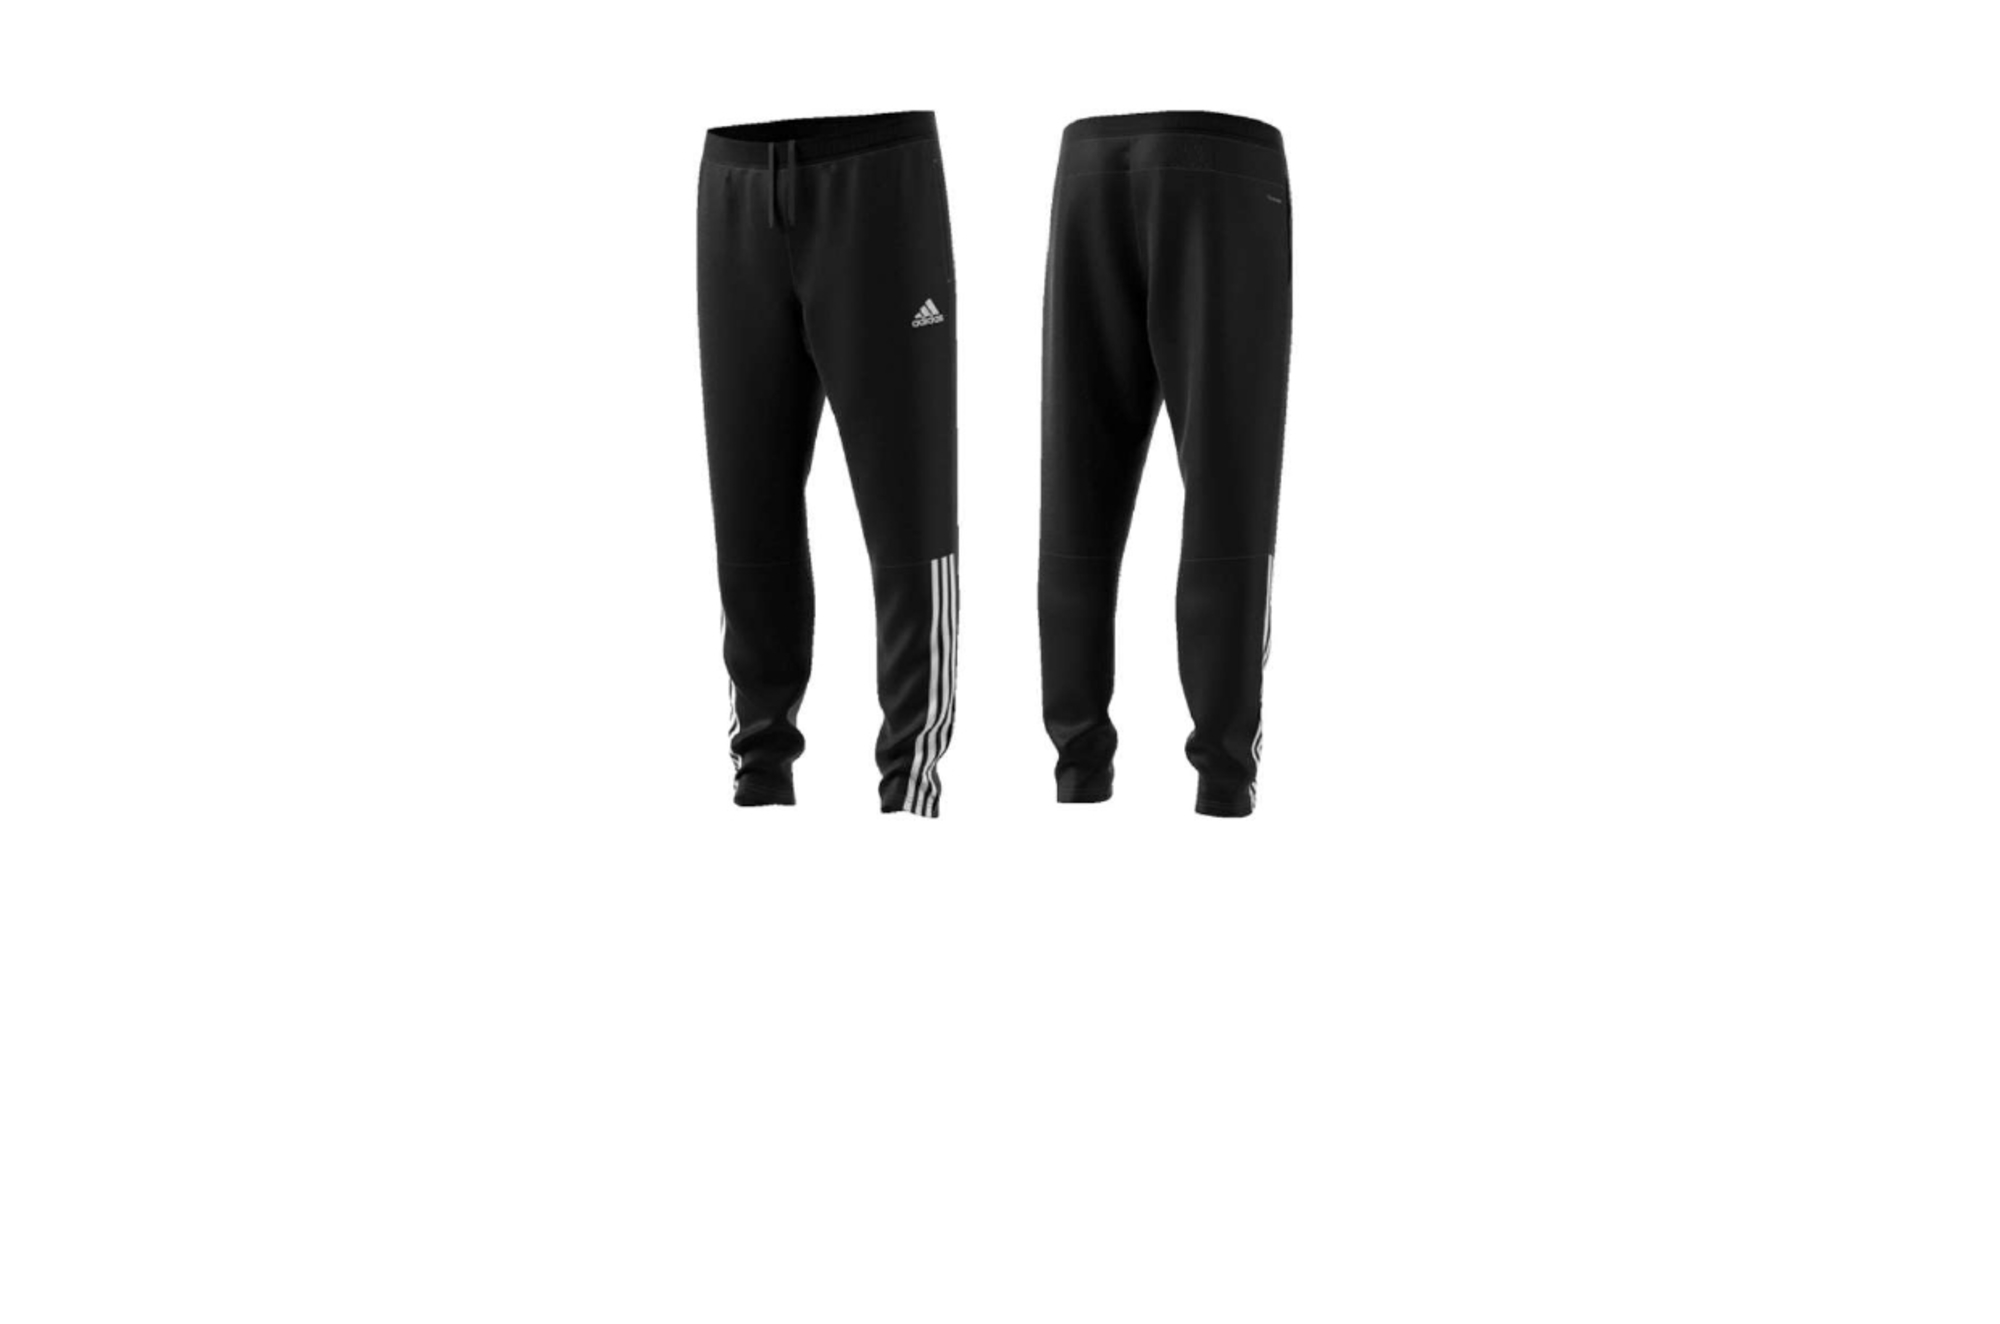 Pantaloni Adidas allenamento Nero